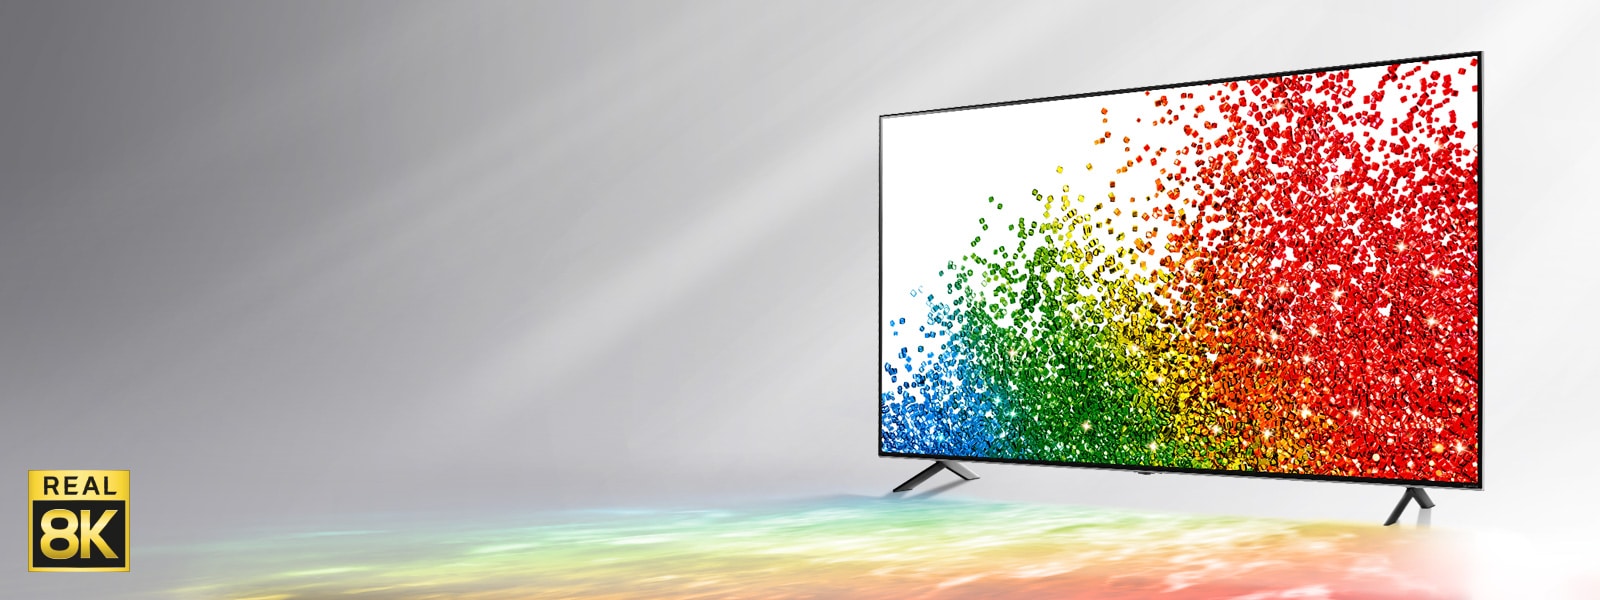 Et billede af et LG NanoCell TV mod en grå baggrund med farver fra skærmen reflekteret på jorden foran.